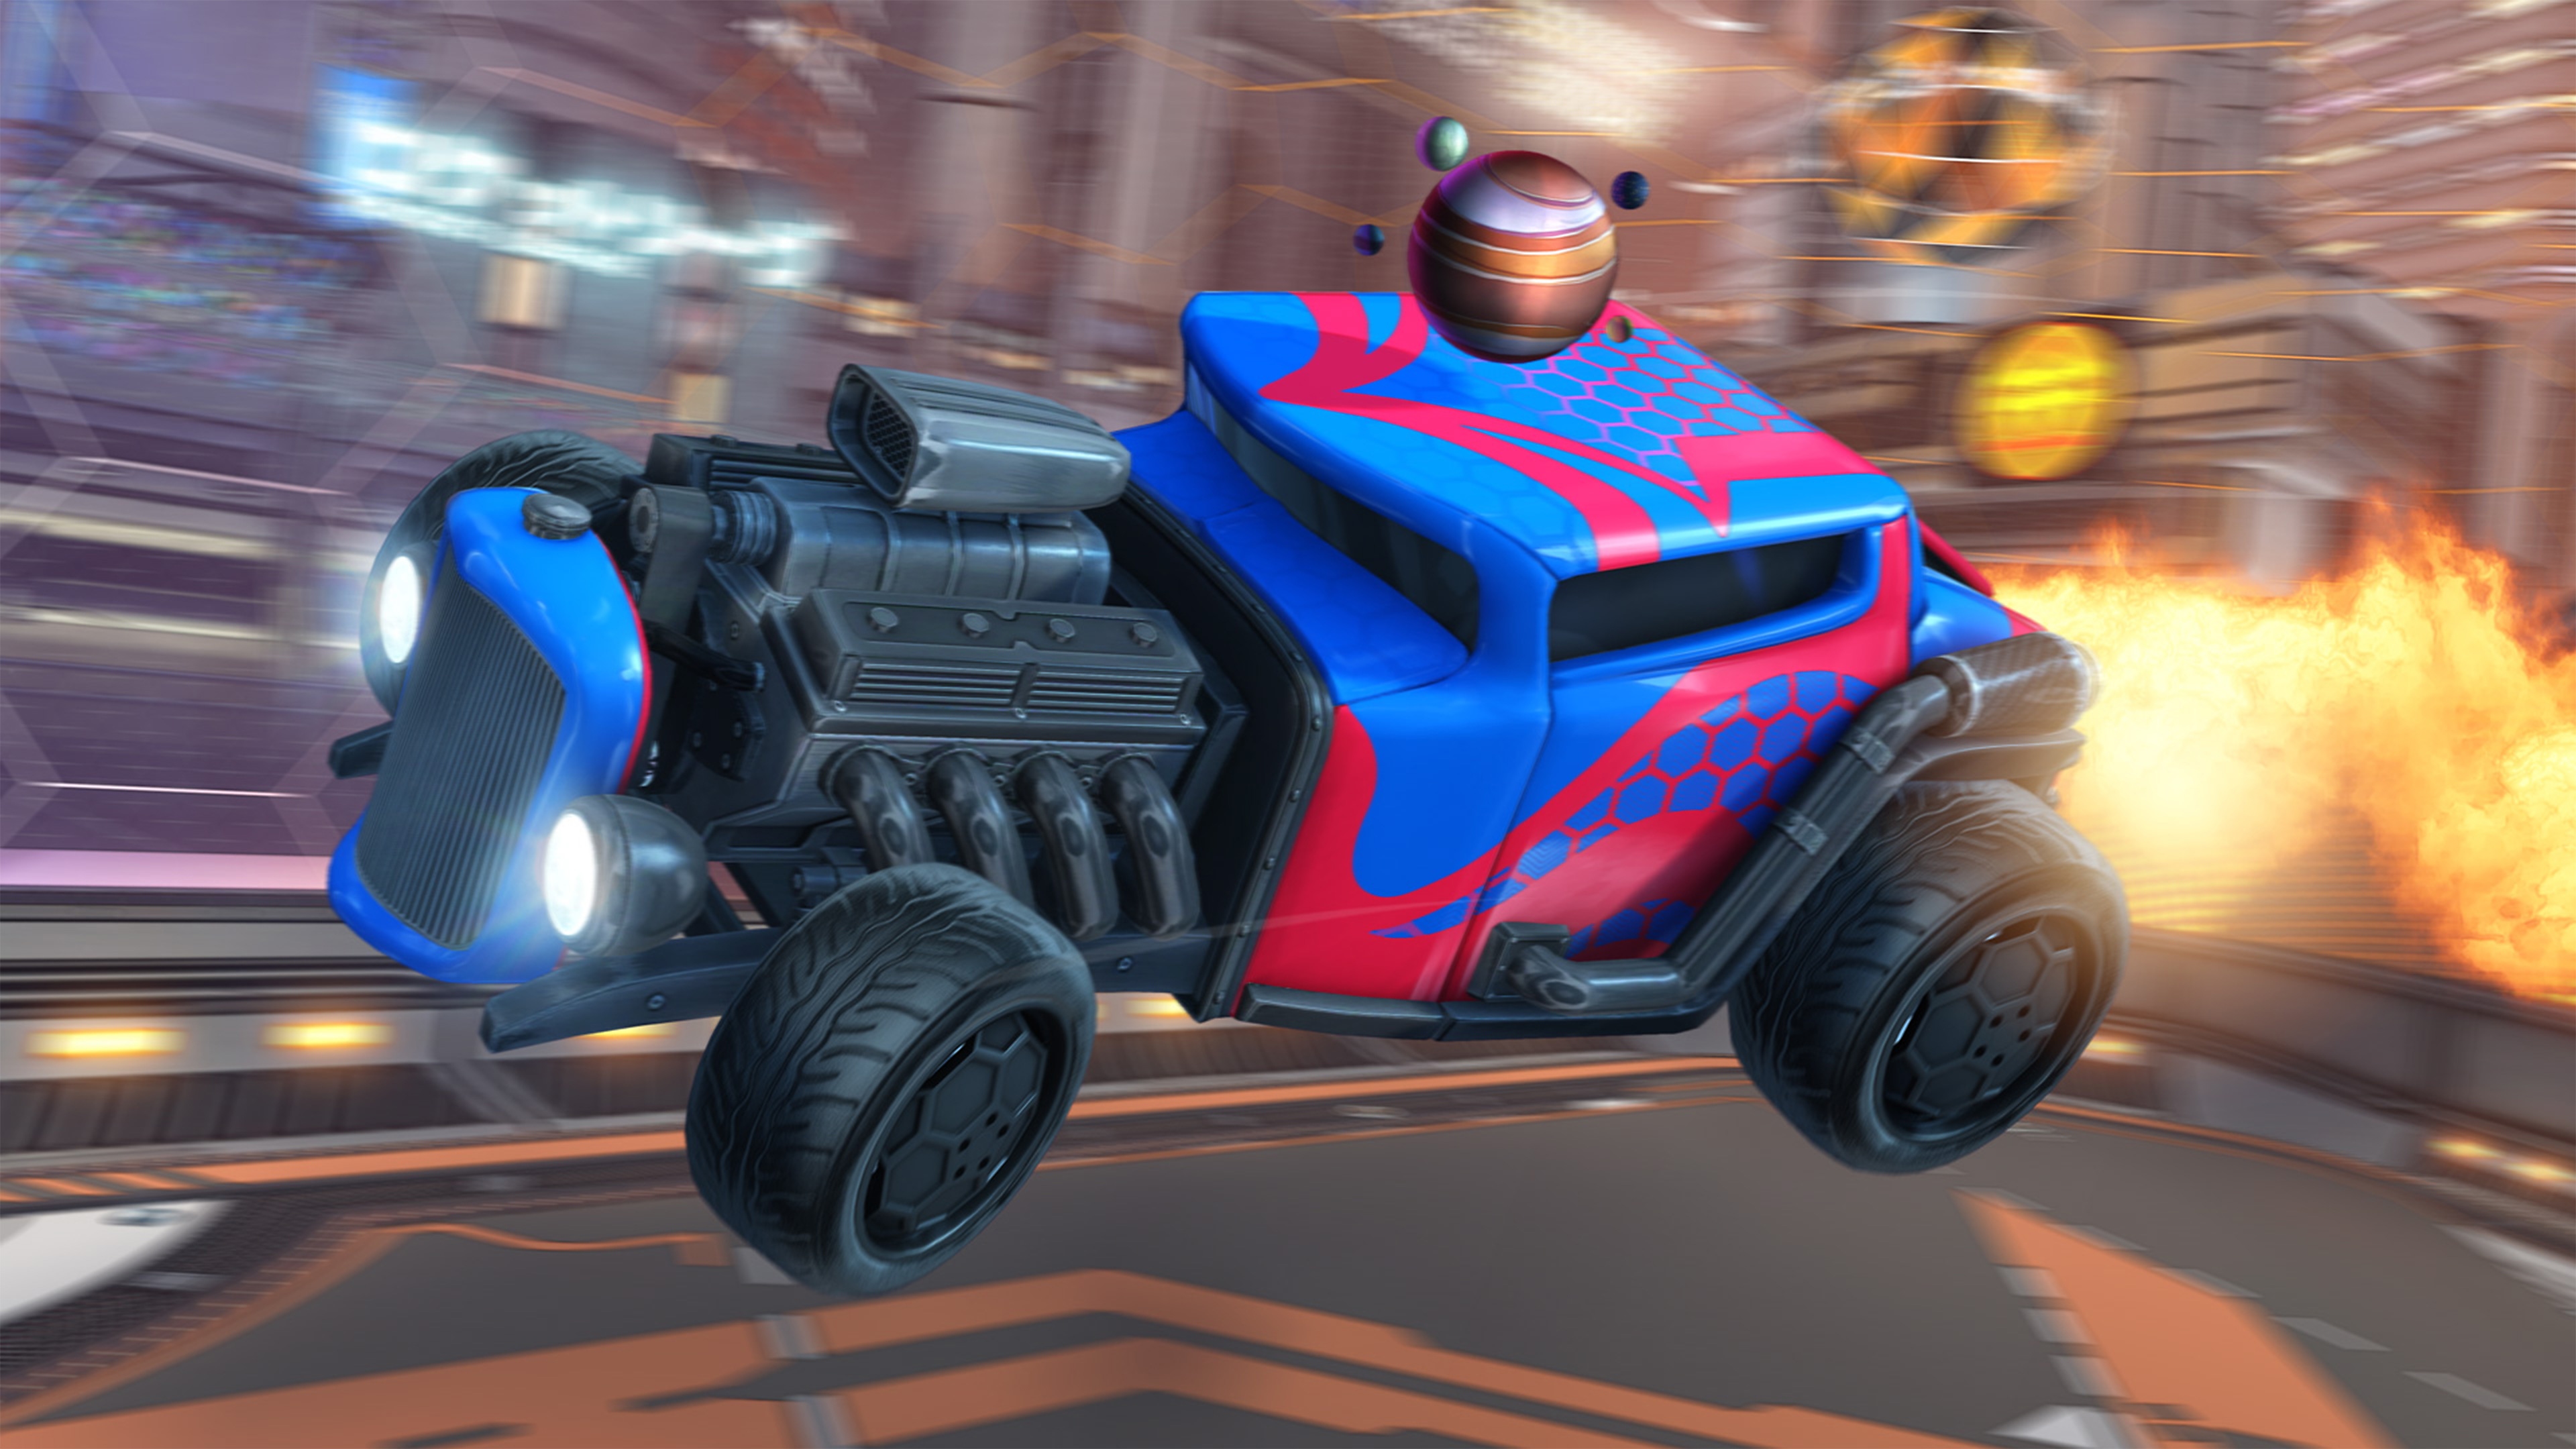 Screenshot van Rocket League met daarop een hot rod-auto met een zichtbare motor en rode en blauwe lak